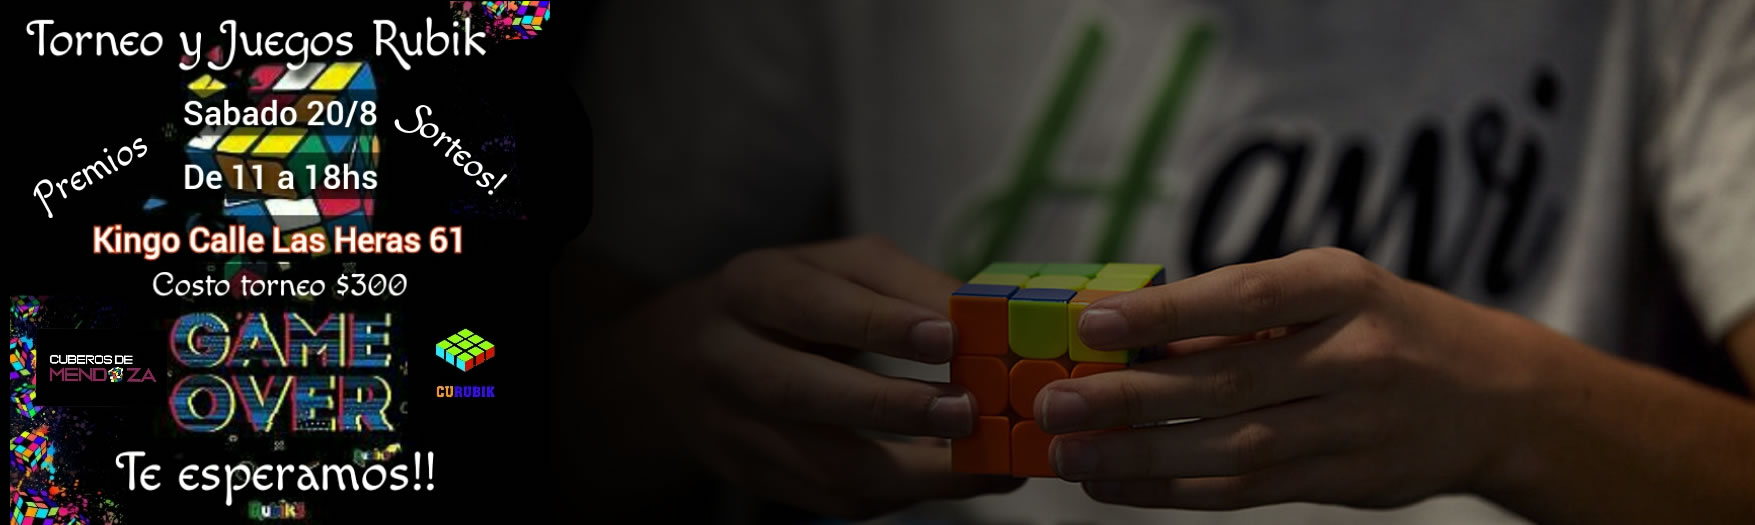 Torneo Cubero y Juegos Rubik 